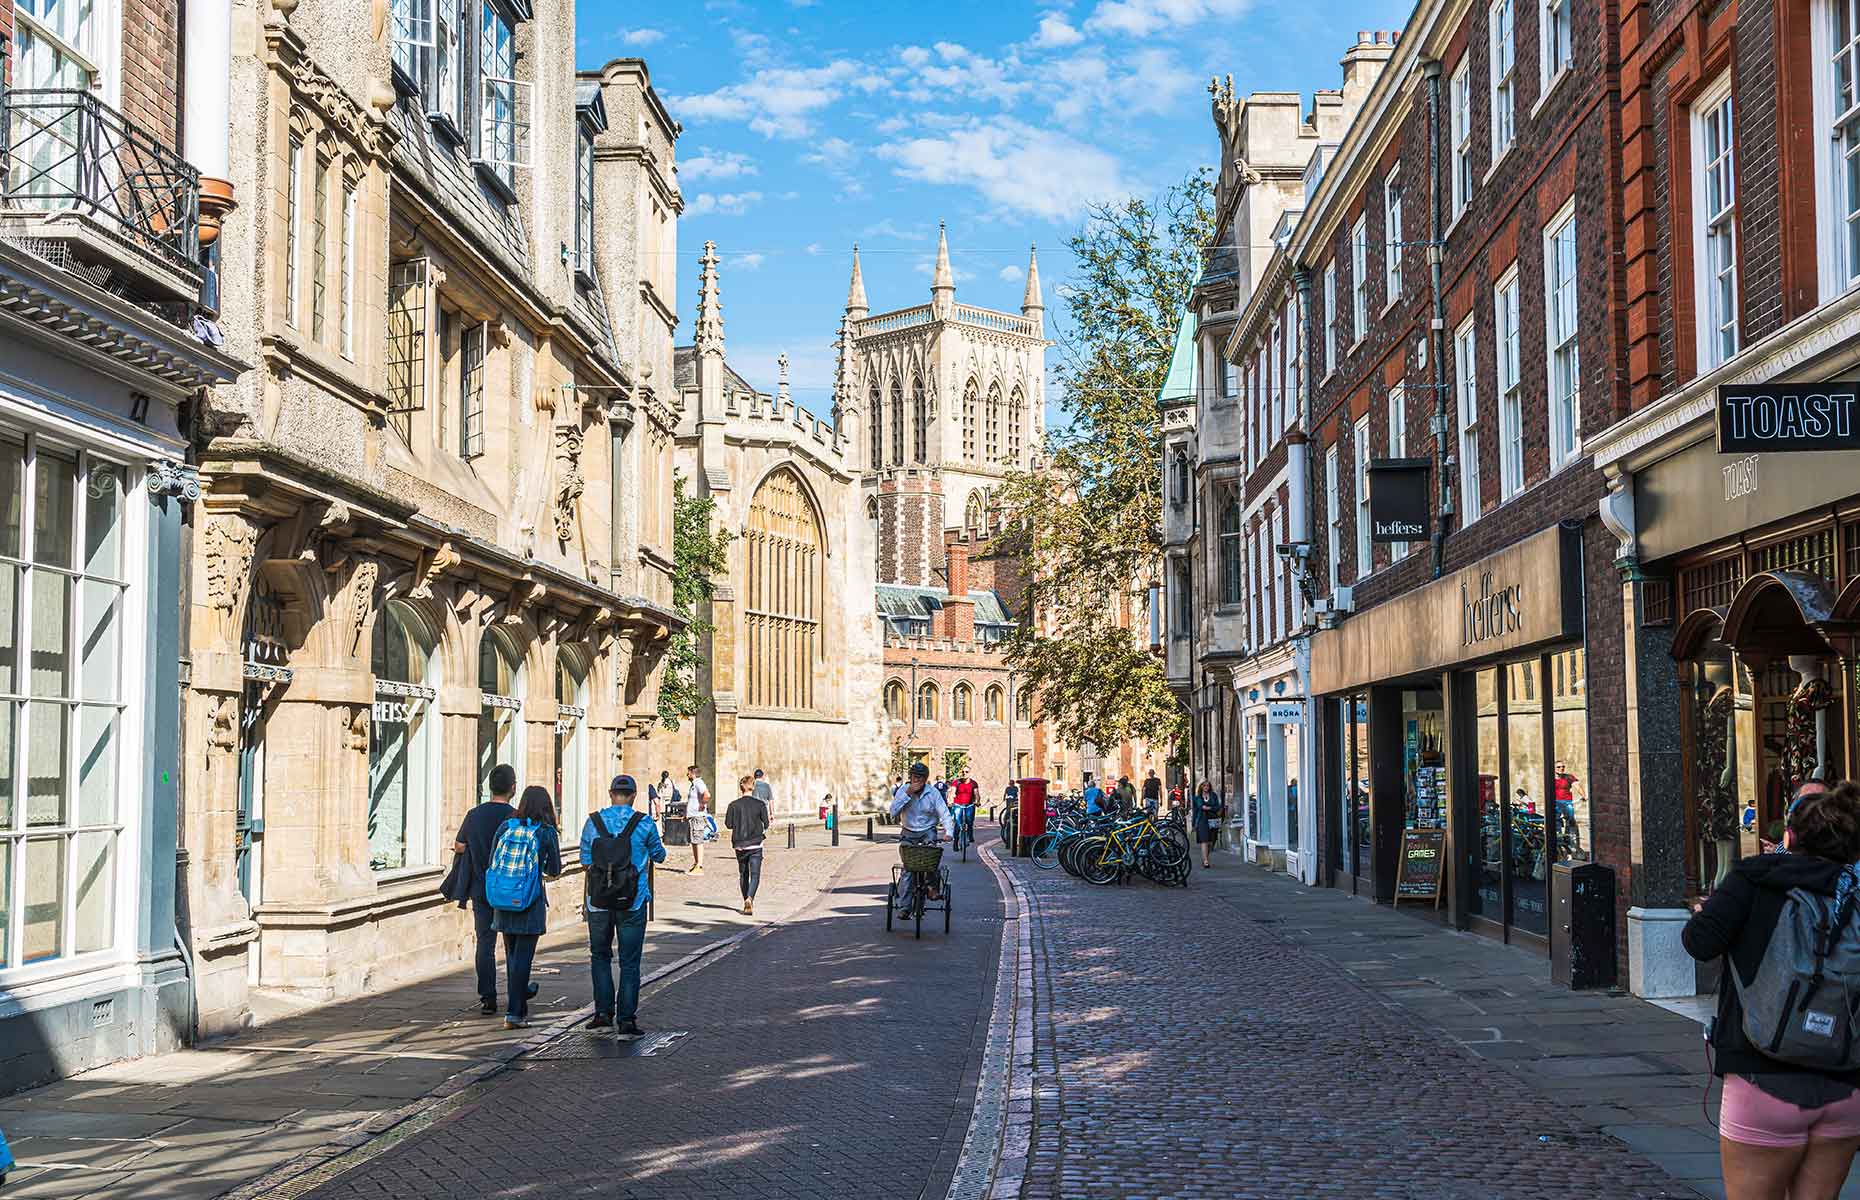 Cambridge street scene (Image: gowithstock/Shutterstock)